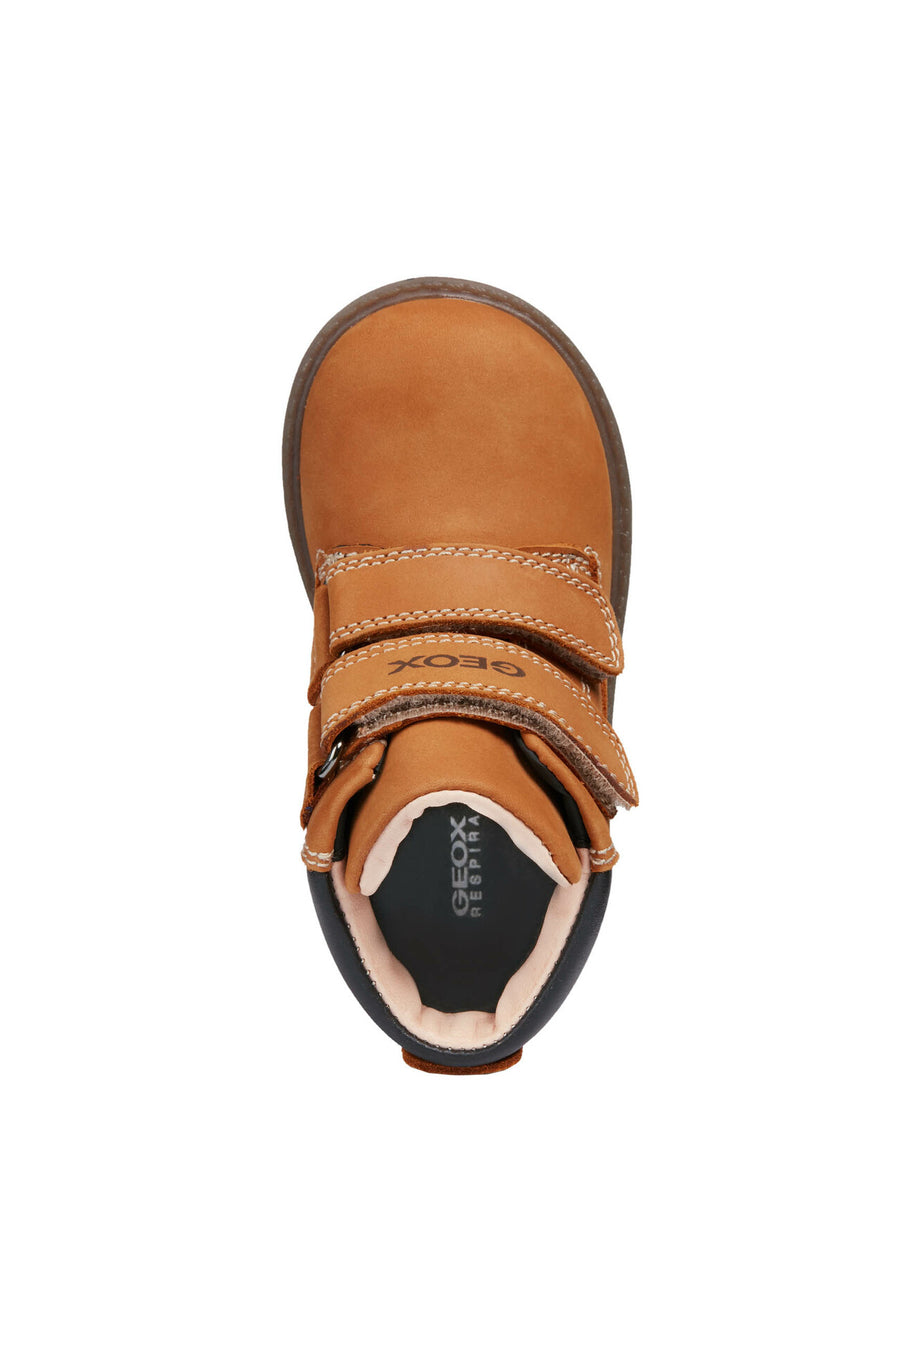 Geox Waterproof Boots | Hynde | Velcro | Tan